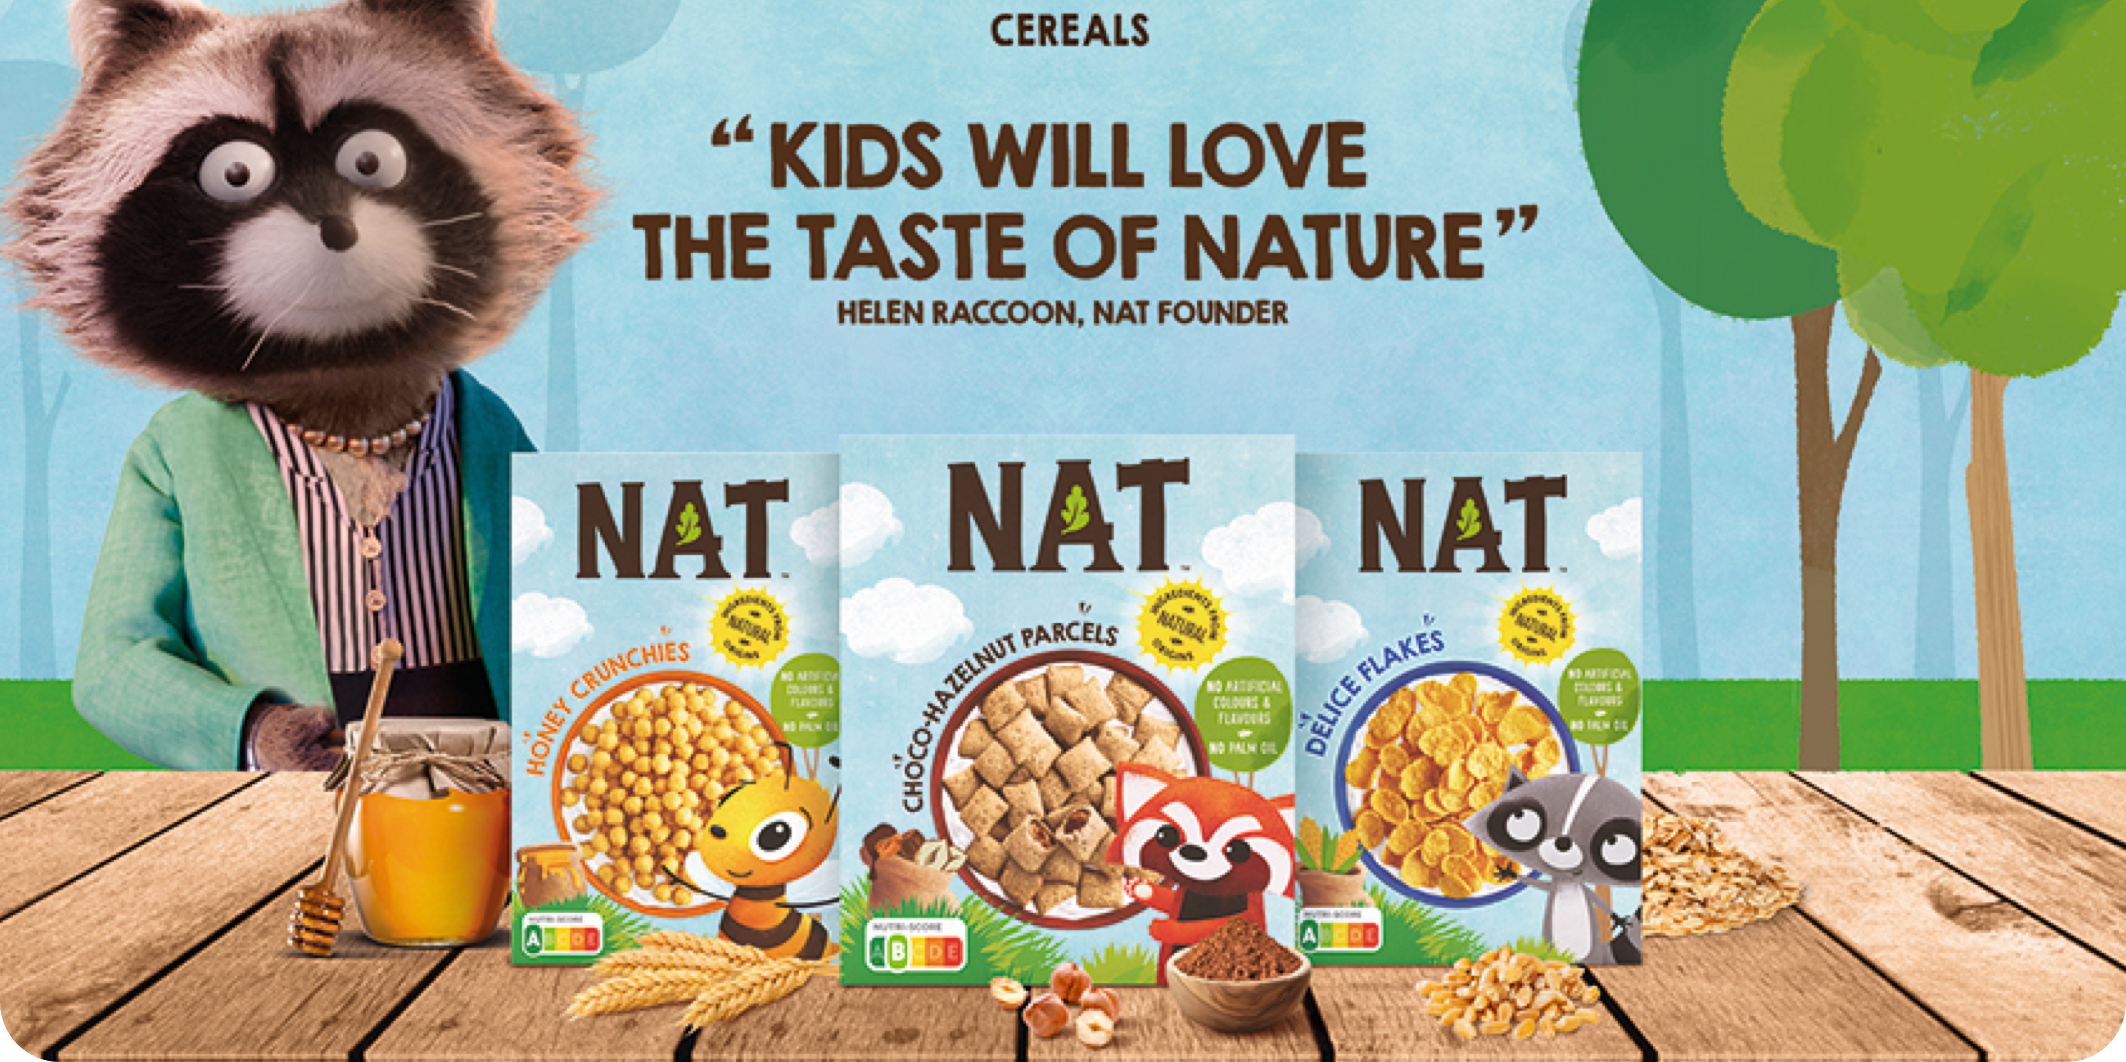 Petit-déjeuner : Nestlé veut réhabiliter ses céréales jugées trop sucrées -  Le Parisien